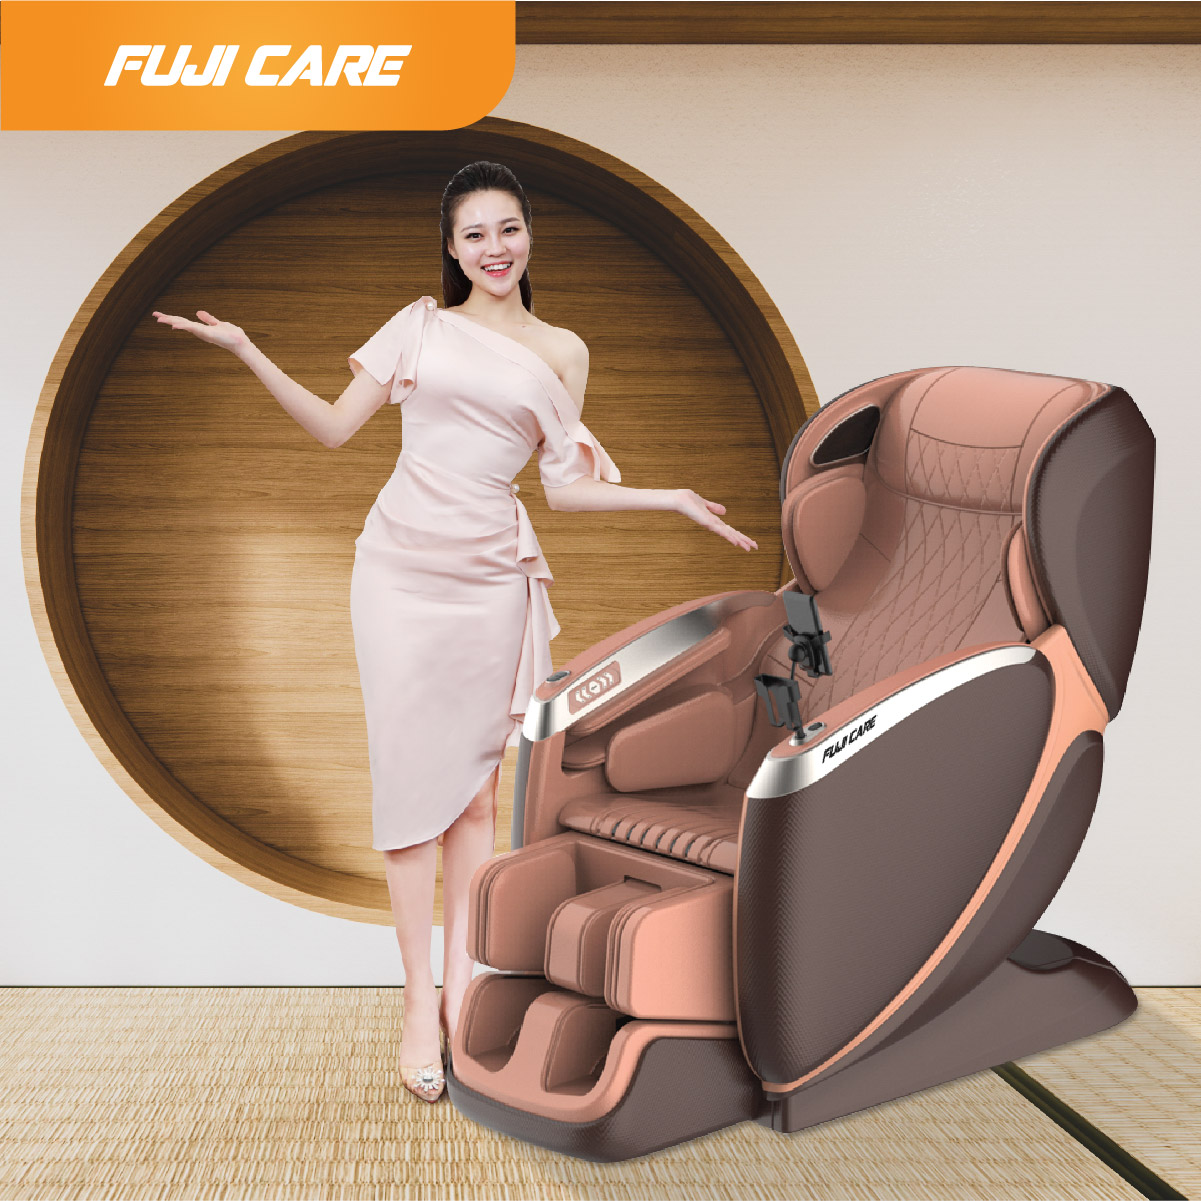  FC - 850 ghế massage cao cấp tốt nhất dành cho sức khỏe của bạn